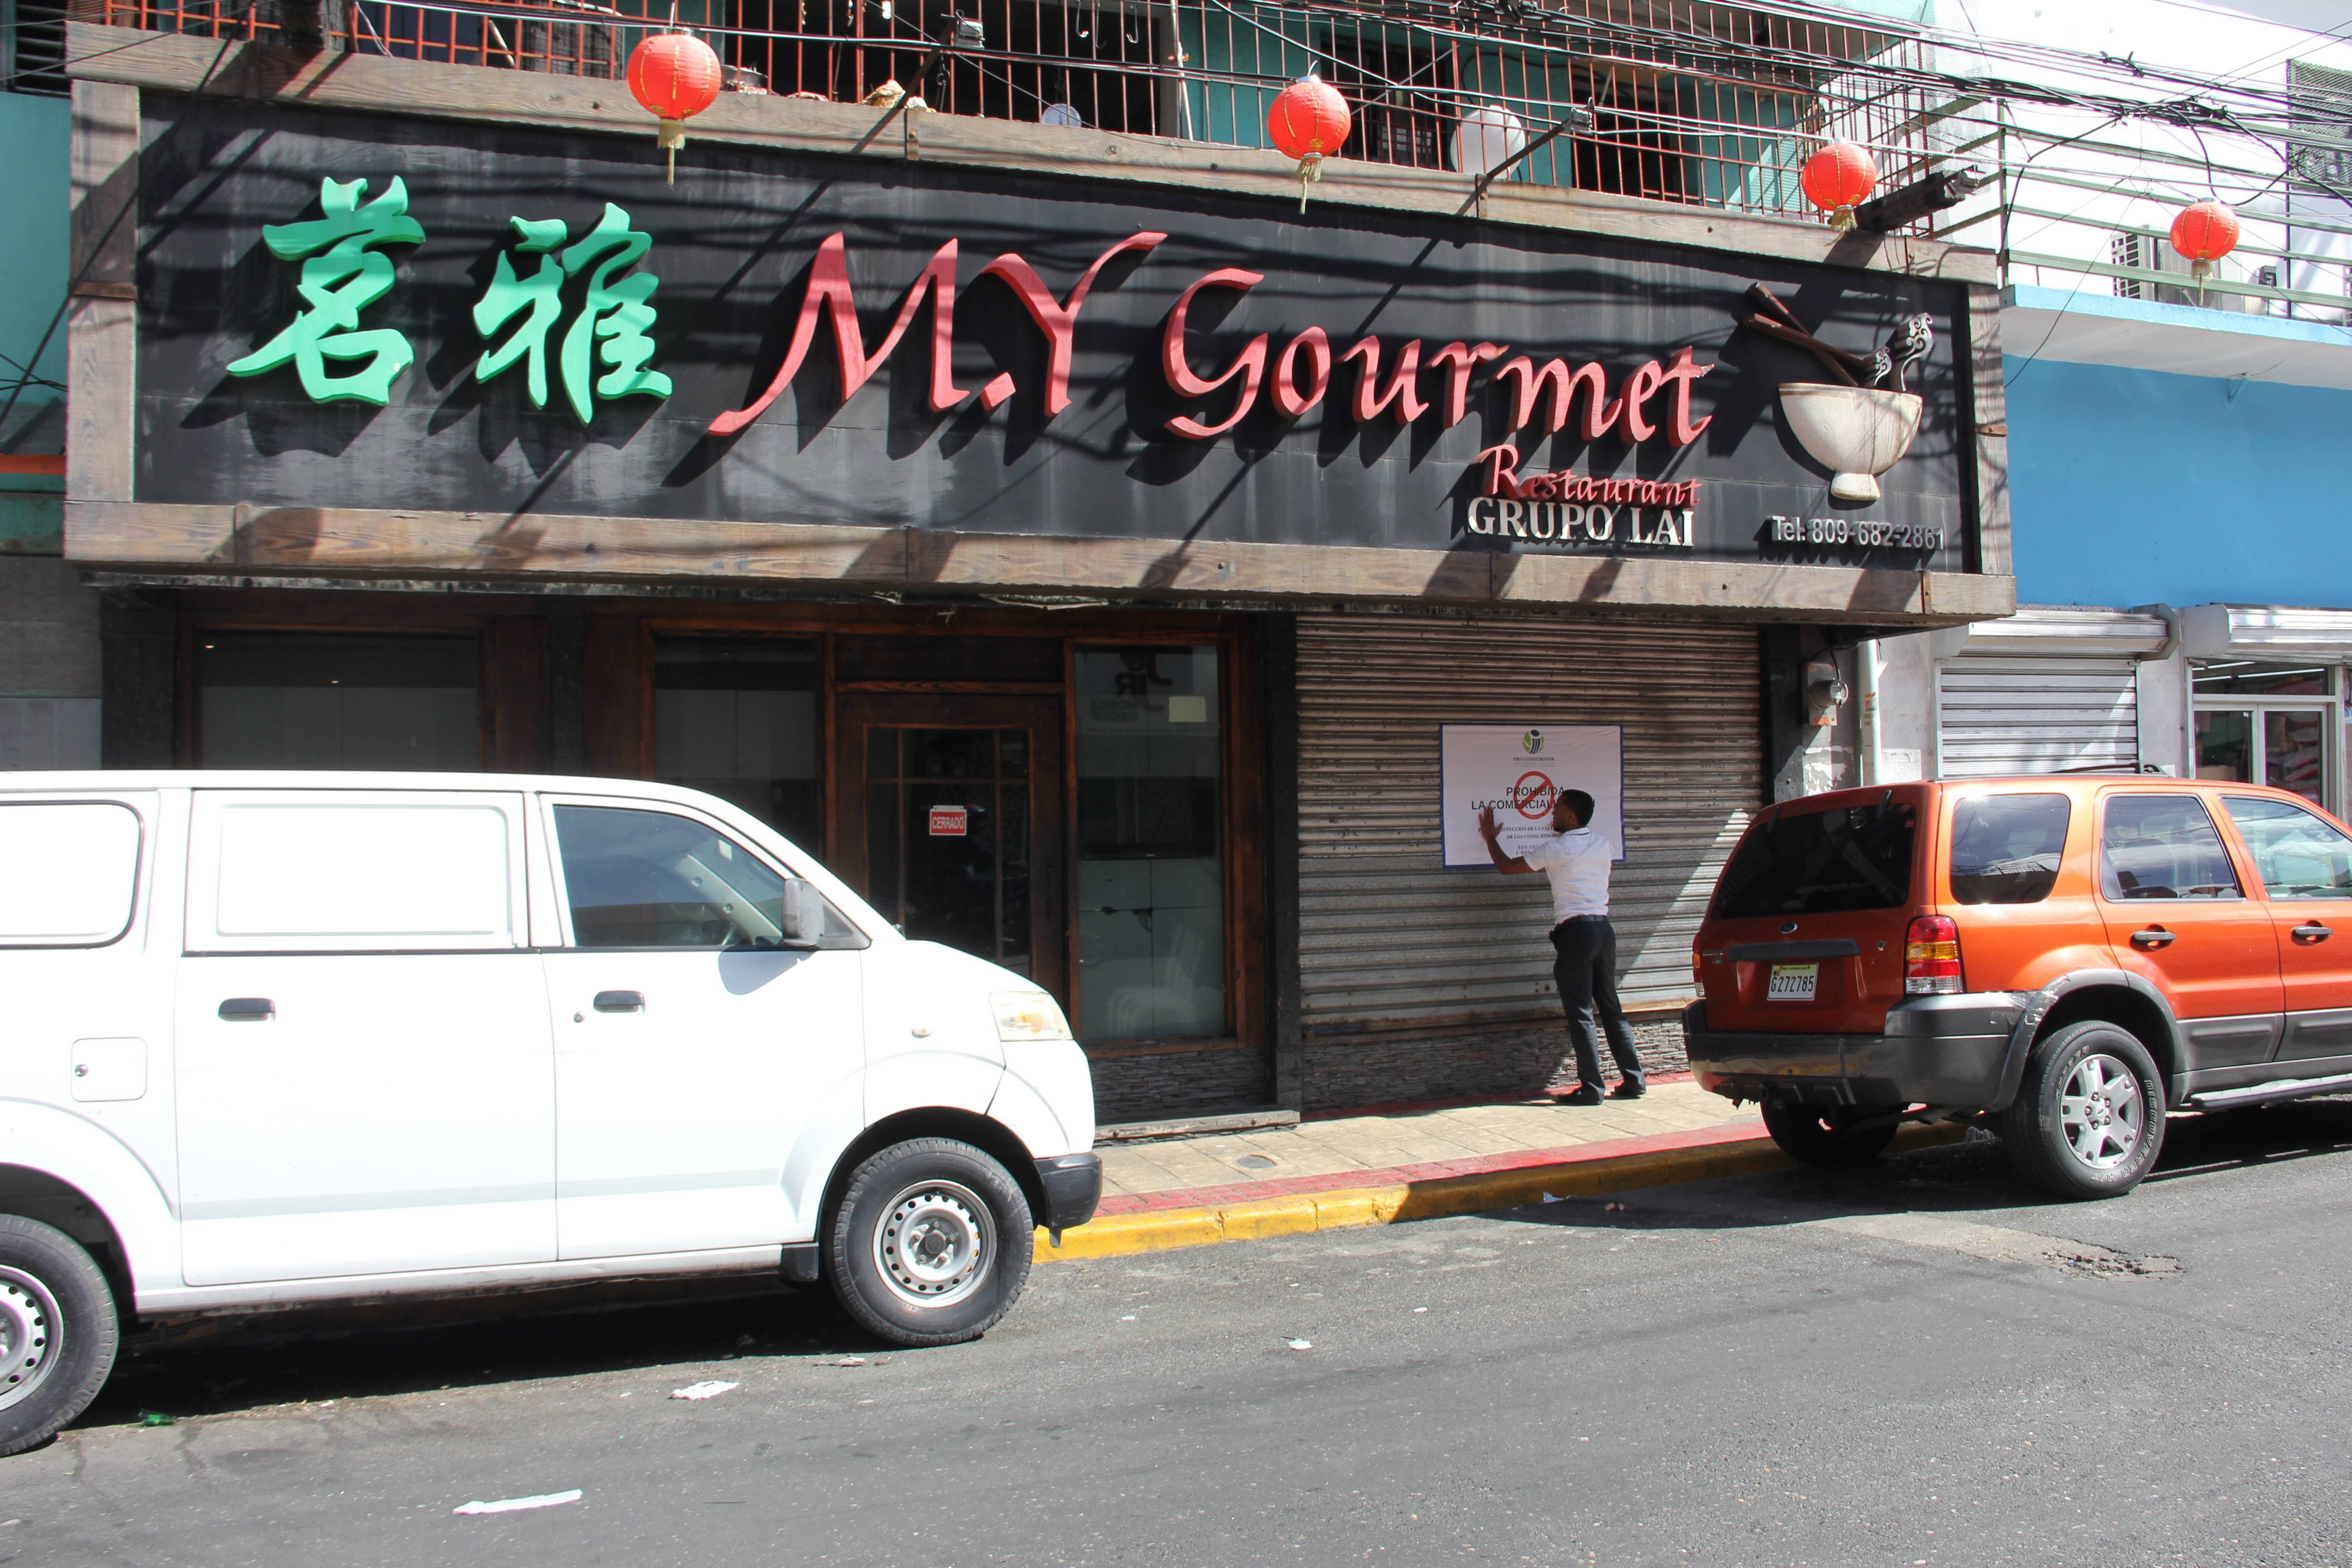 Cierran el restaurante por falta de higiene e inseguridad alimentaria en el Barrio Chino